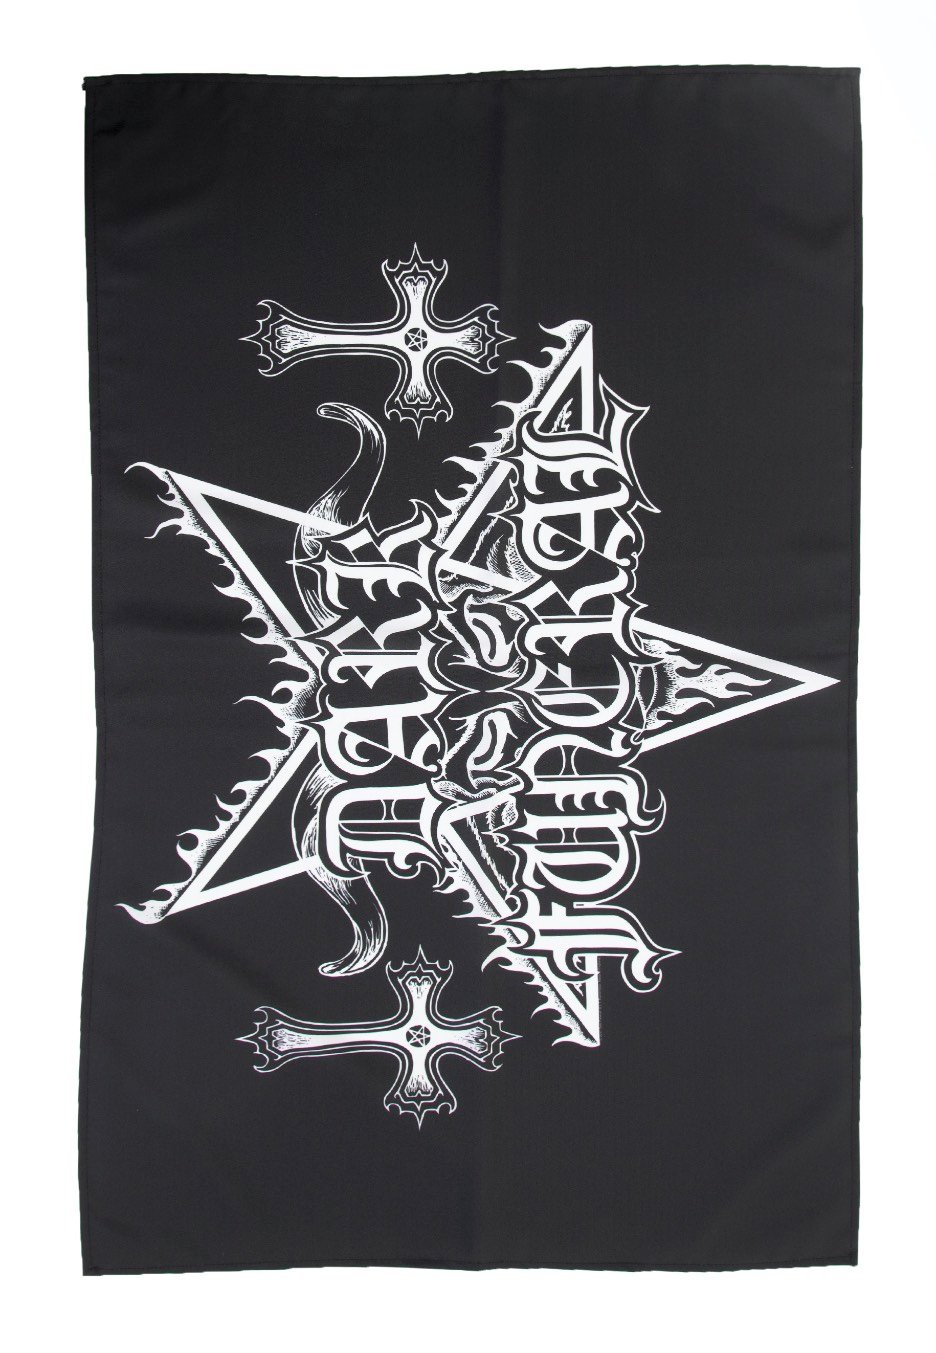 Dark Funeral - Logo - Flag